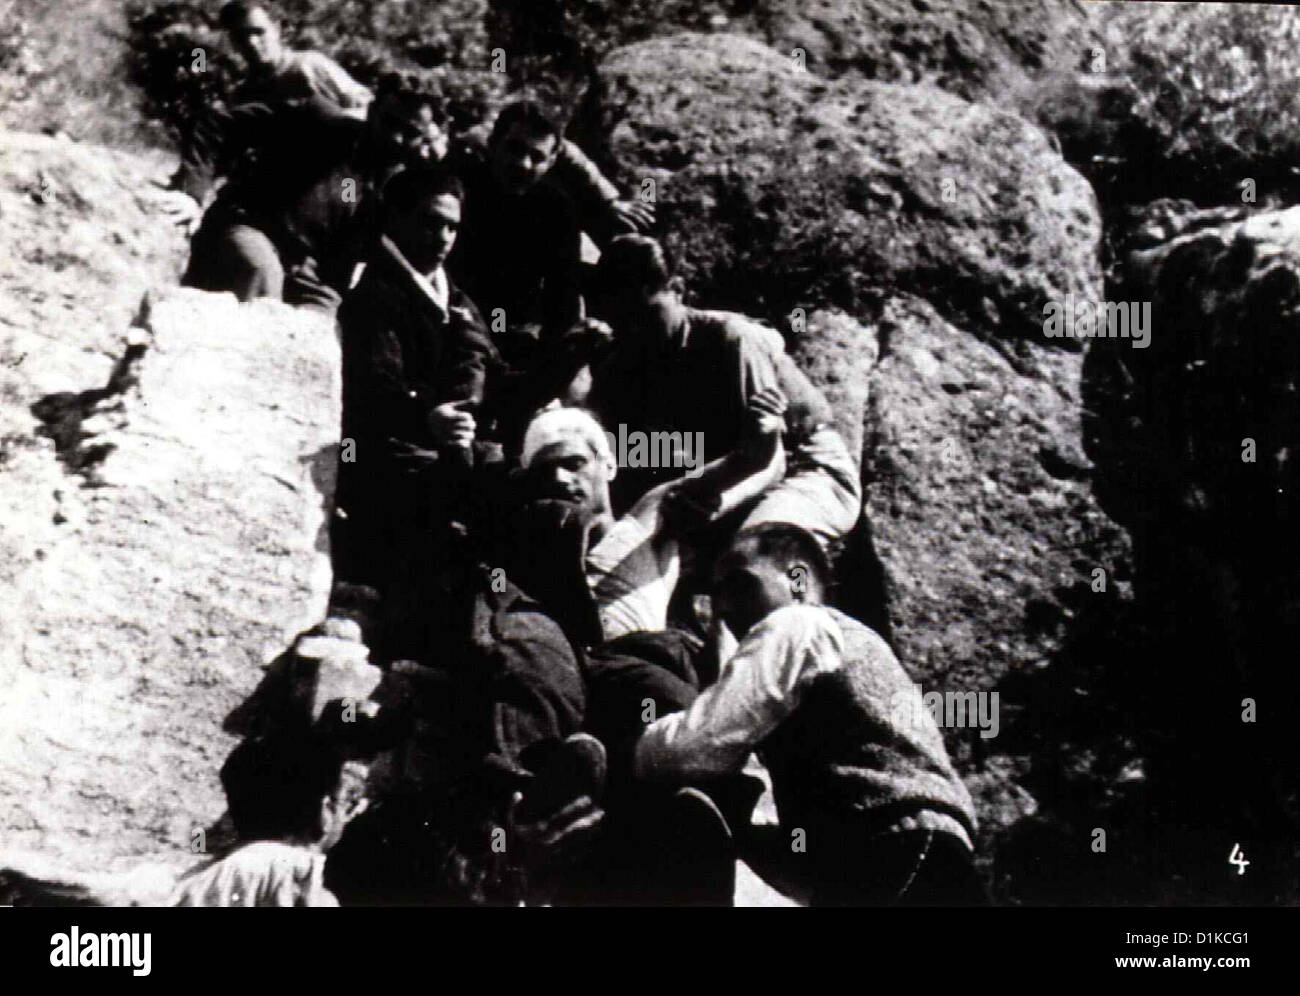 Hoffnung  Espoir, L'  Im Dokumentarstil gefilmt, erzählt Andre Malraux von den Schrecken des Spanischen Bürgerkrieges. Szene Stock Photo